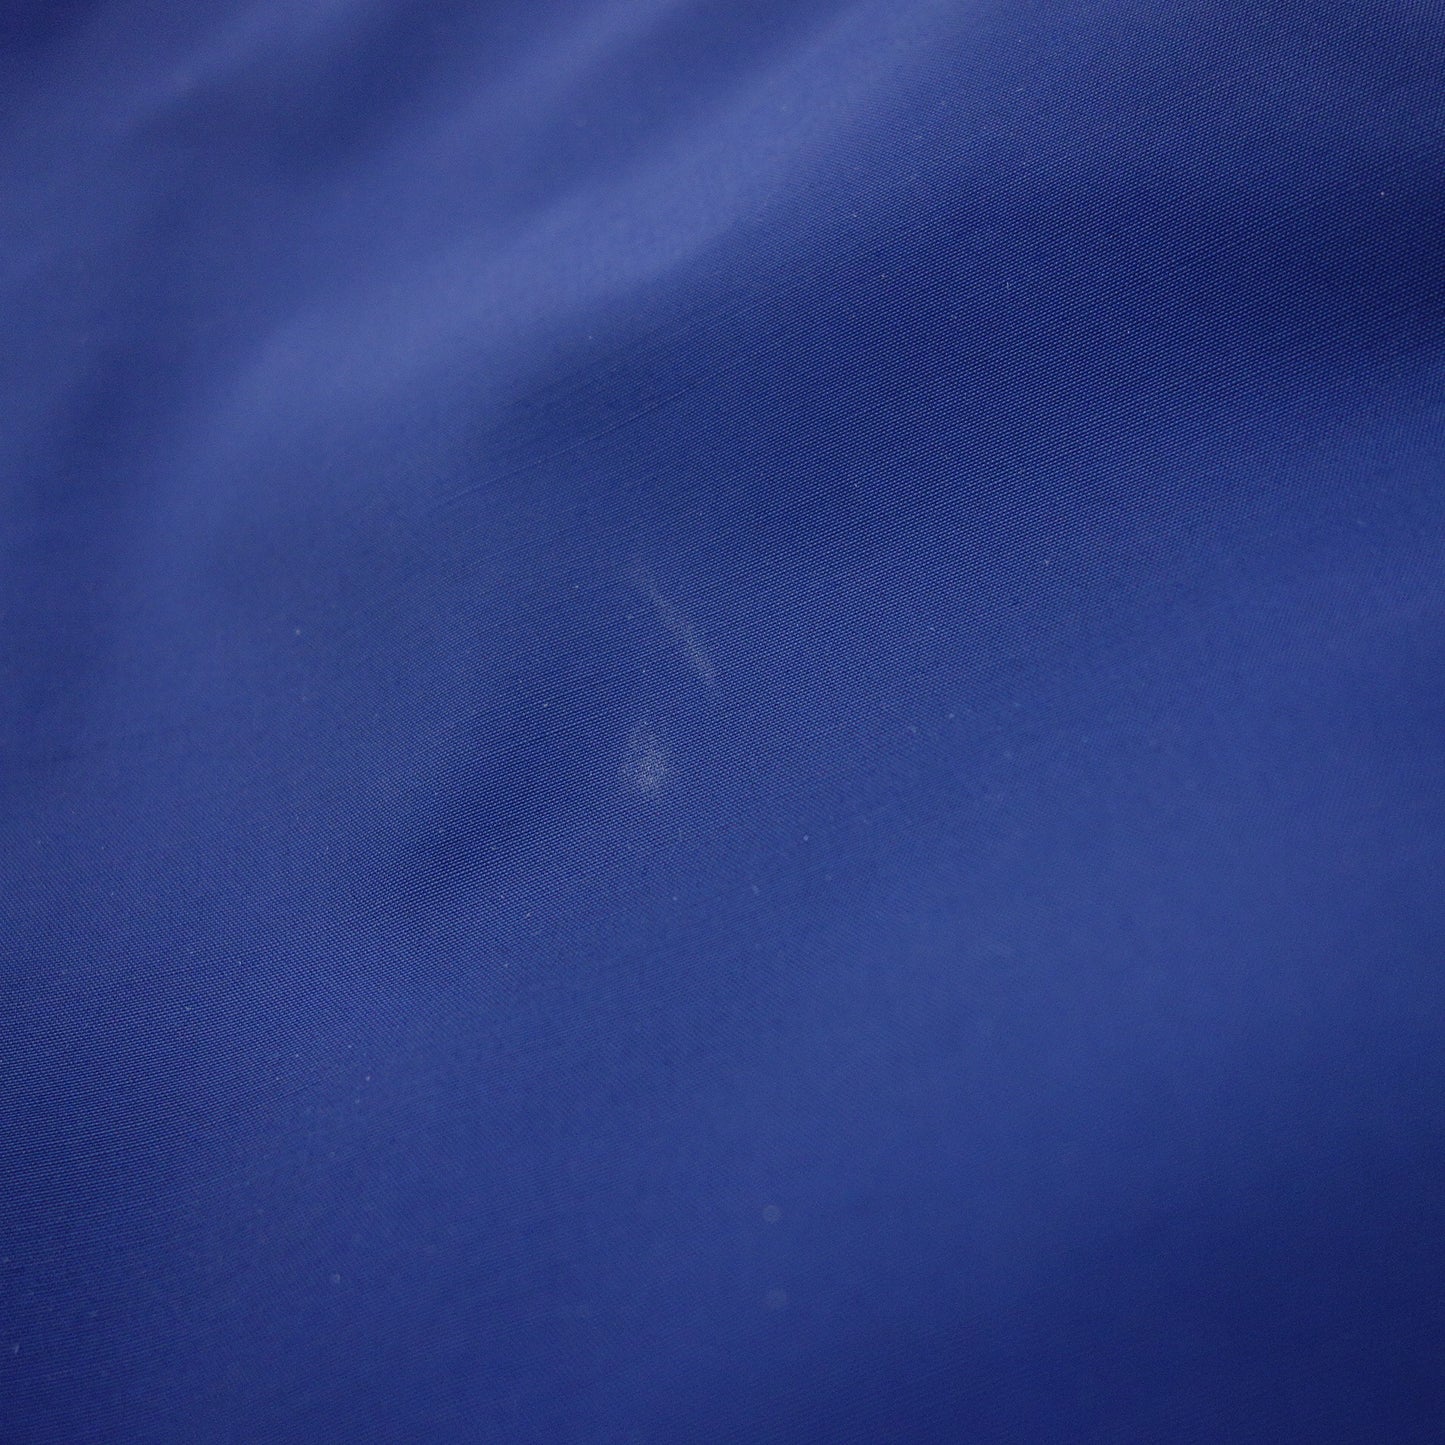 マッキントッシュ コート ロロピアーナ レインシステム メンズ ブルー 38 Mackintosh【AFA3】【中古】